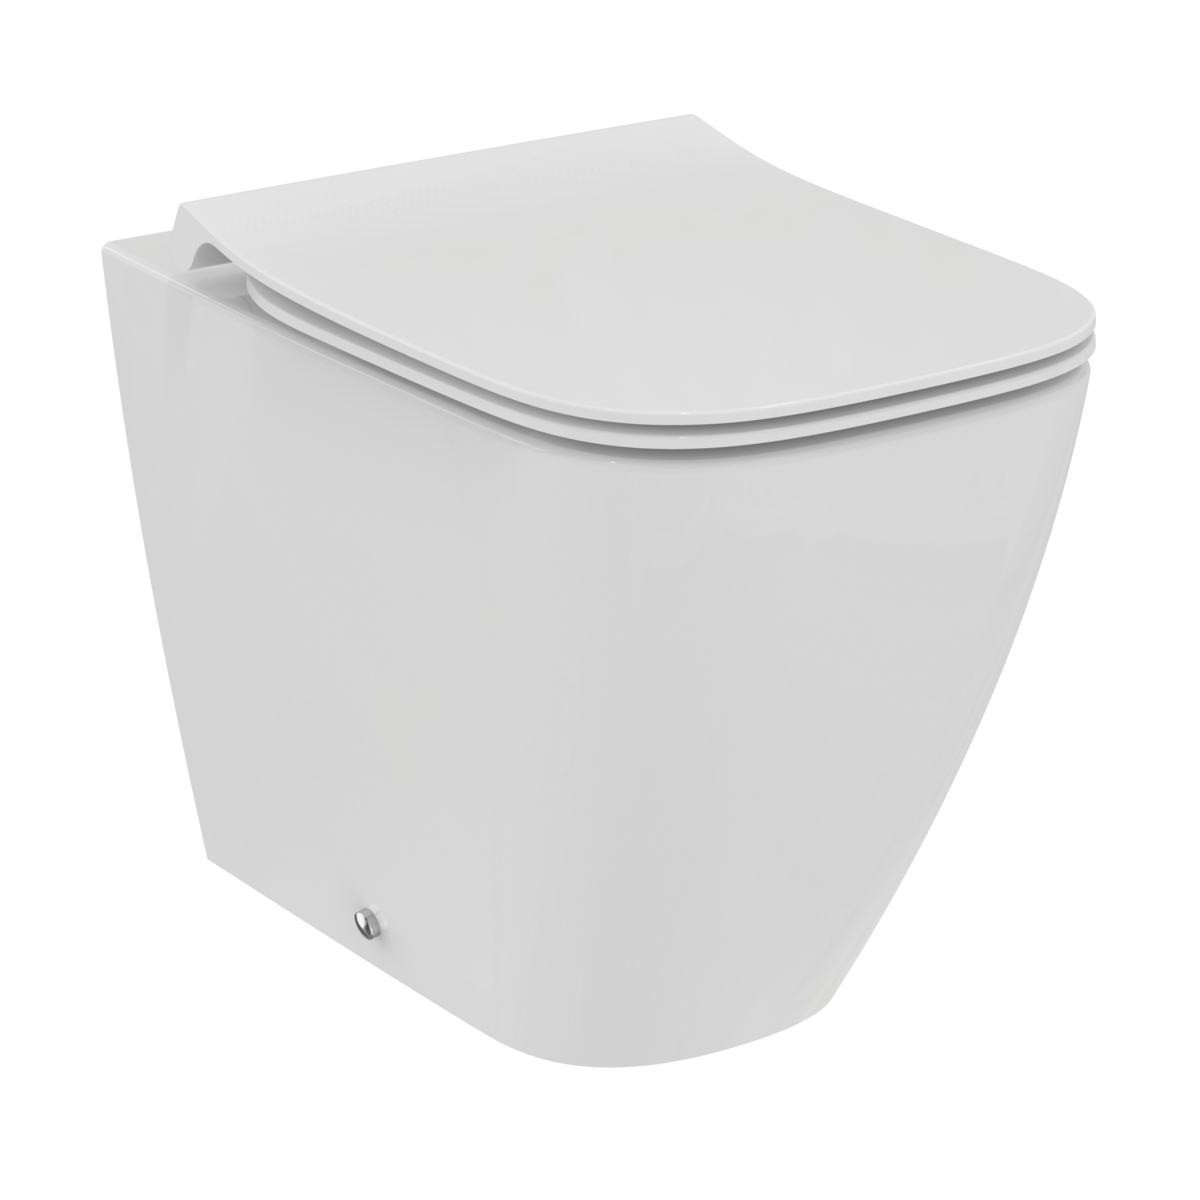 Tavoletta wc ideal standard Ideal B T500201 sgancio rapido